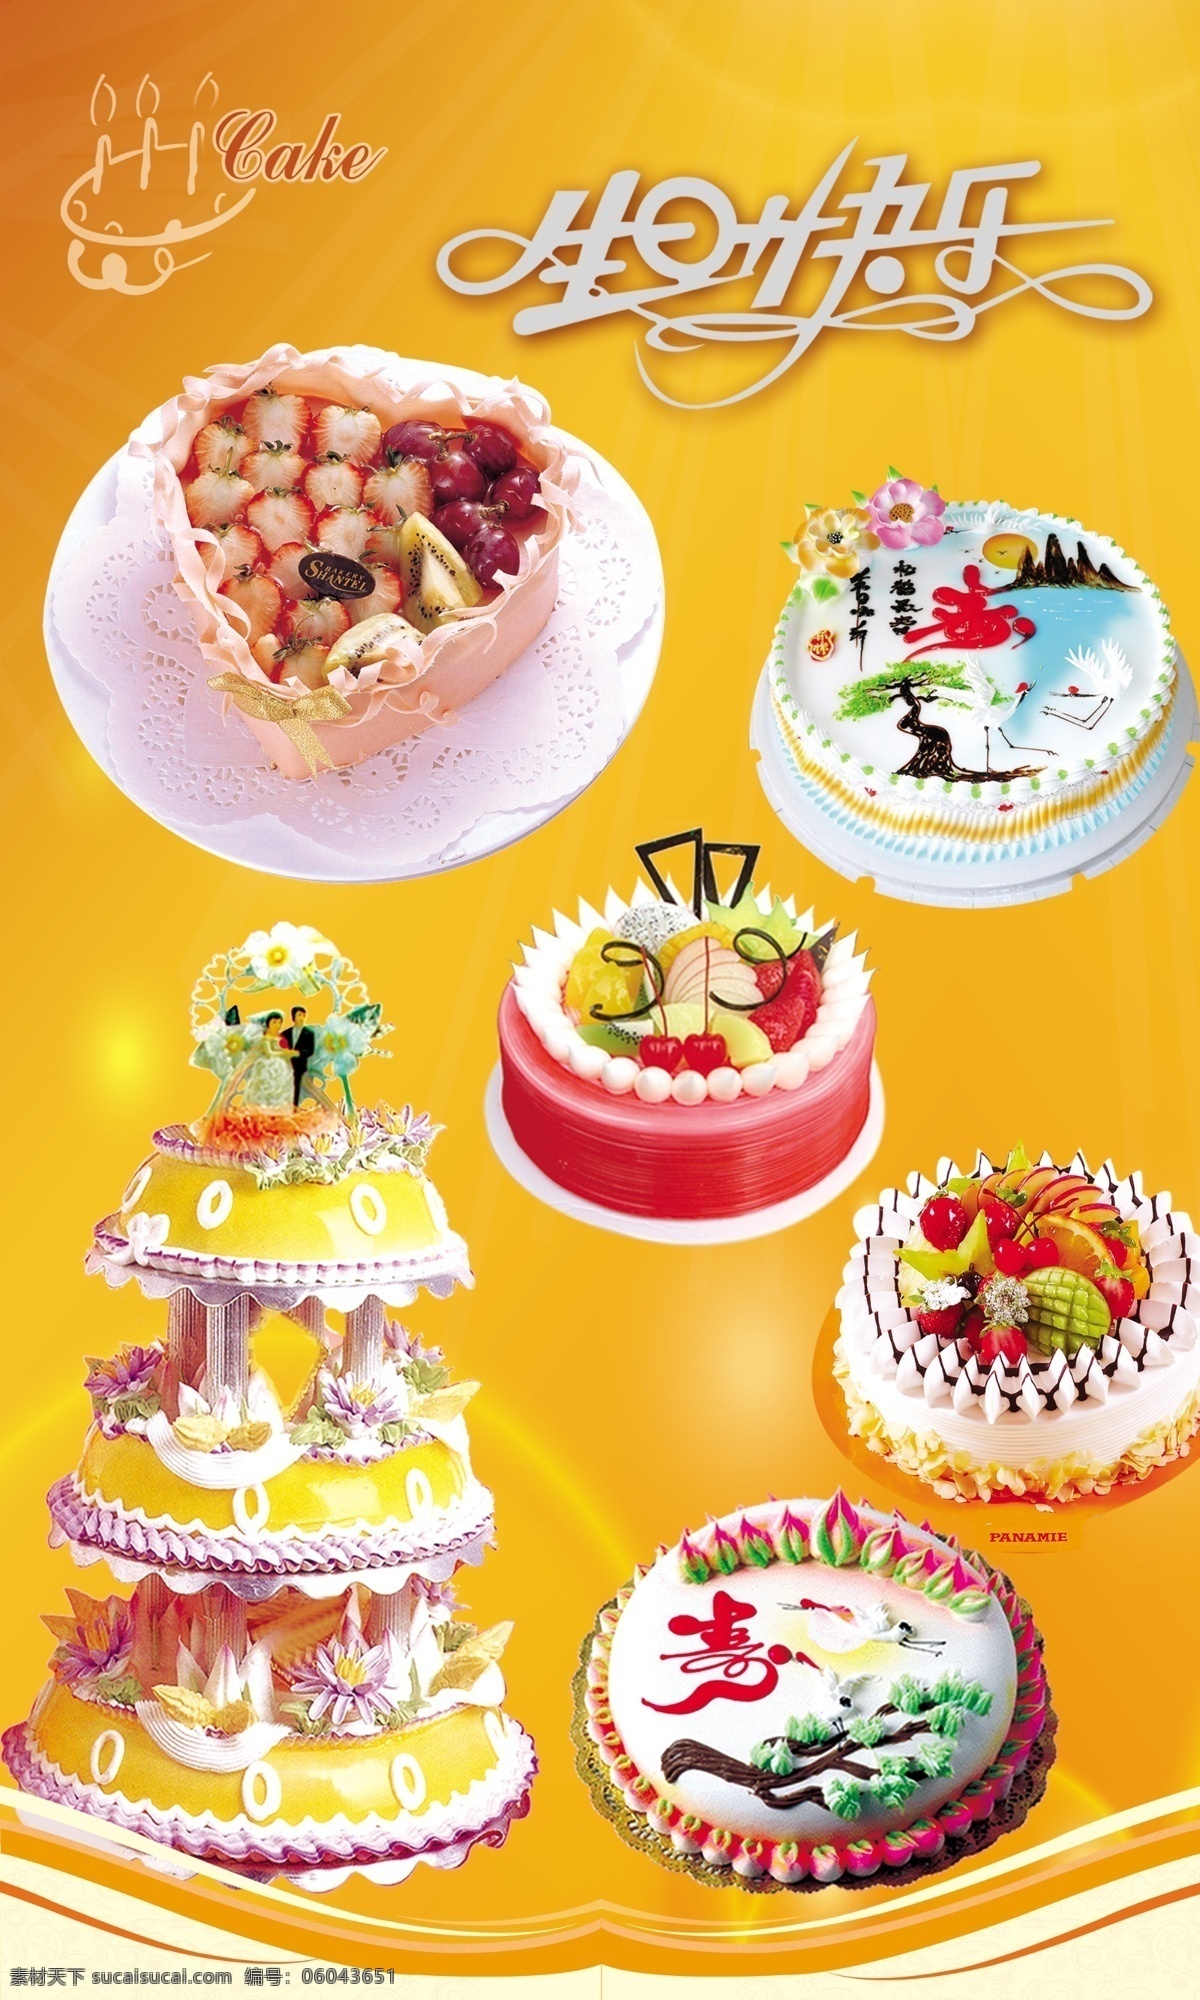 蛋糕 生日蛋糕 草莓蛋糕 水果蛋糕 婚礼蛋糕 奶油蛋糕 巧克力蛋糕 紫色蛋糕 心形蛋糕 橘黄色背景 广告设计模板 源文件